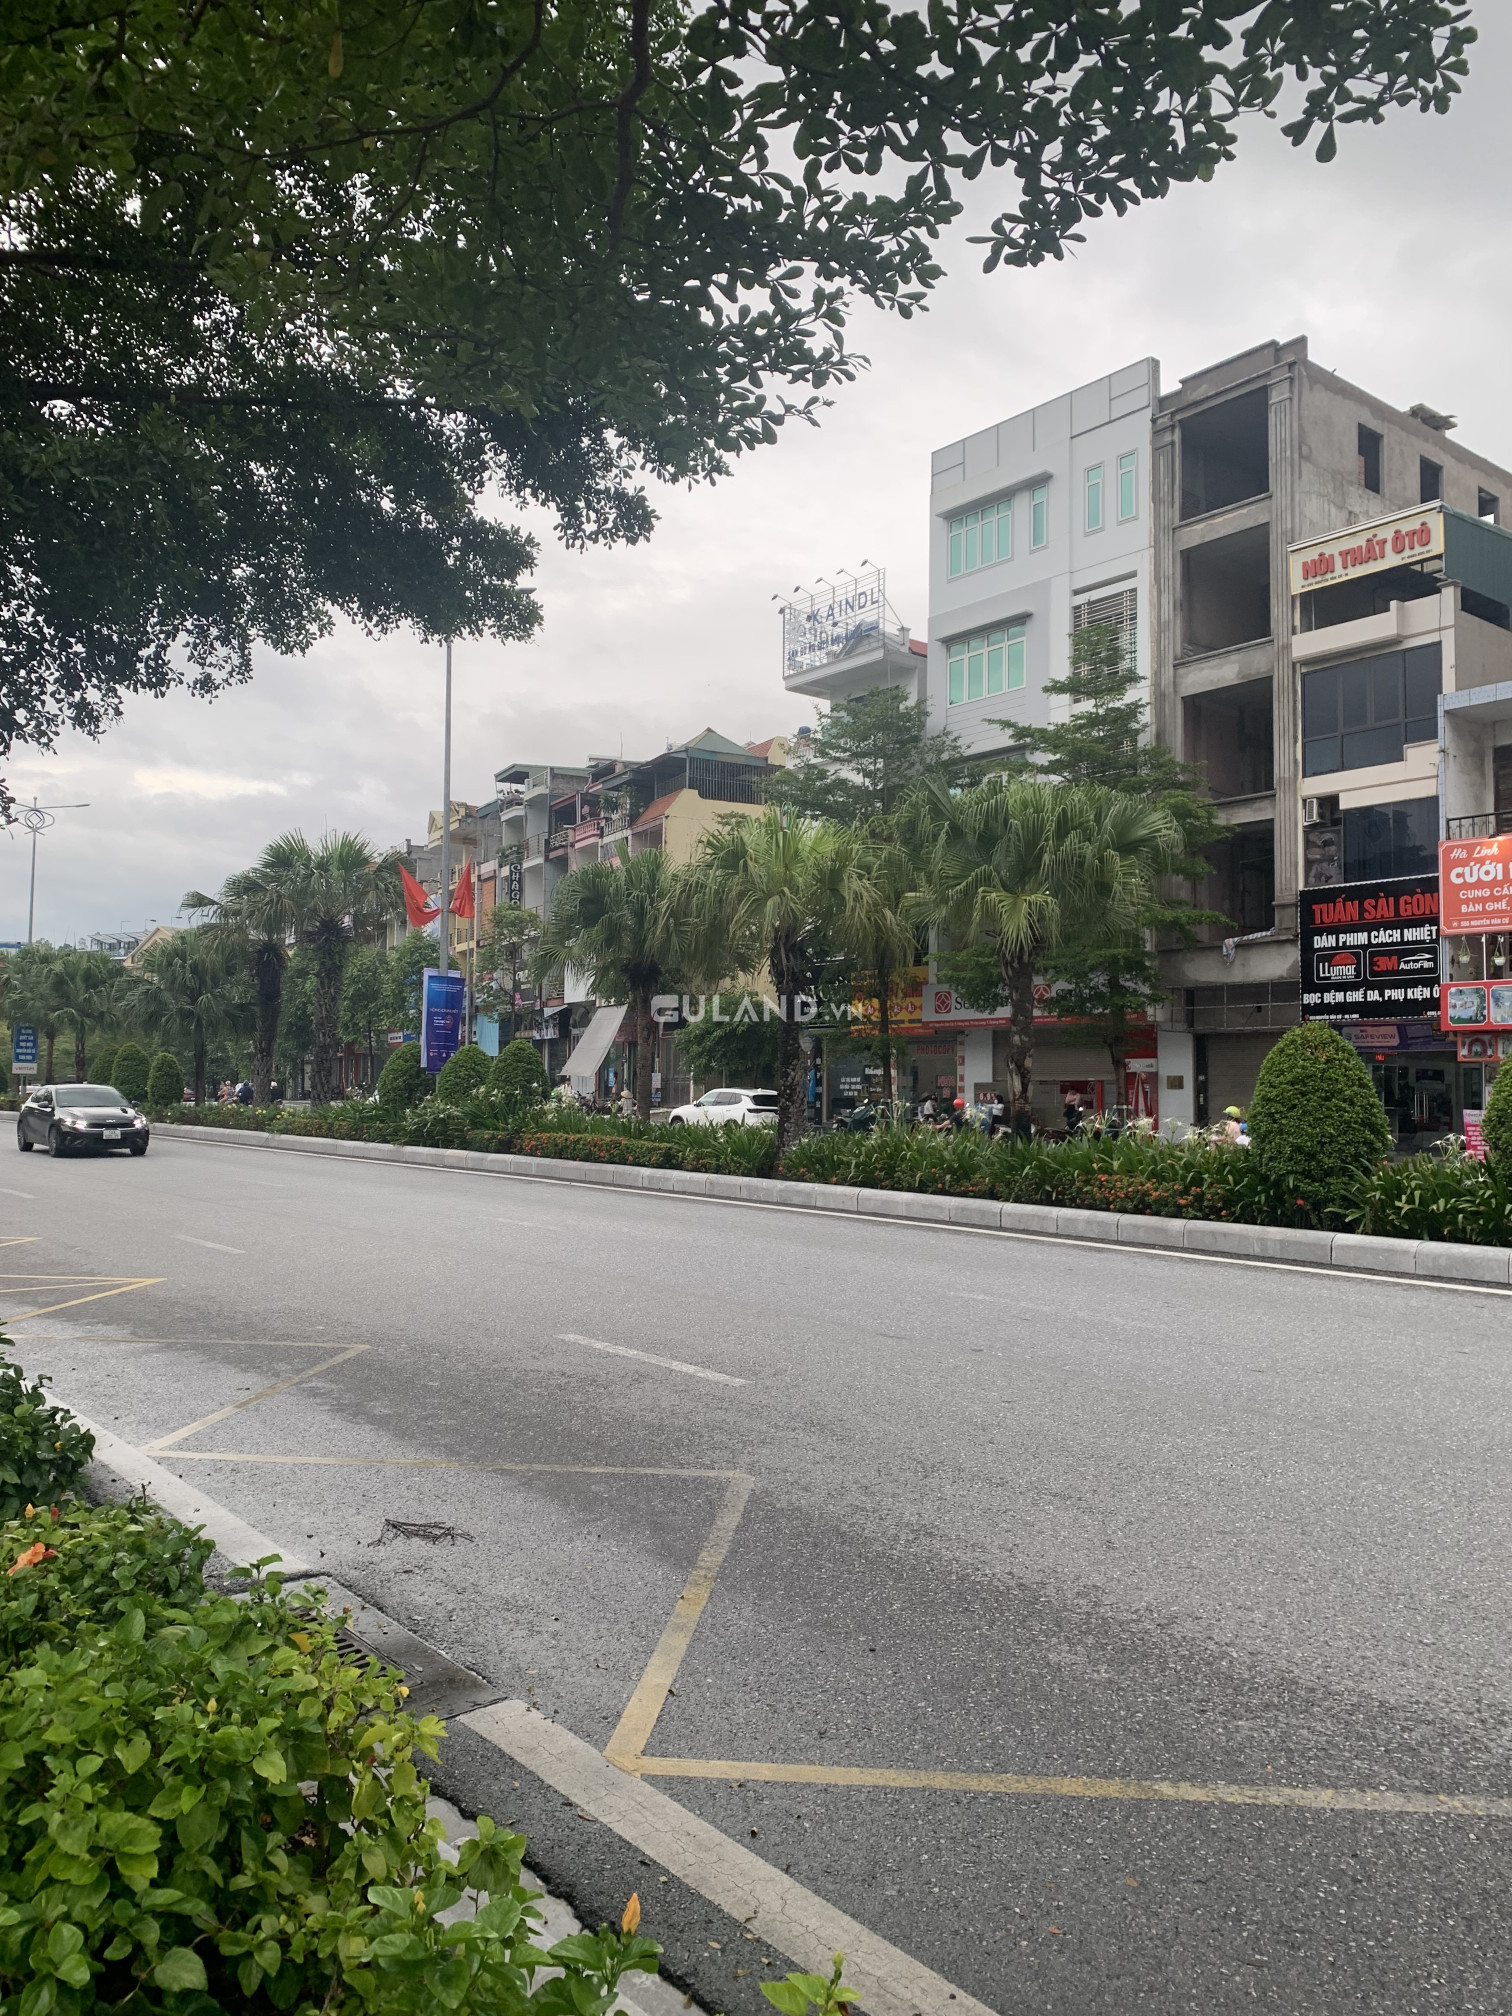 💥Bán gấp nhà xây thô 5 tầng mặt đường Nguyễn Văn Cừ,Hồng Hải,Hạ Long